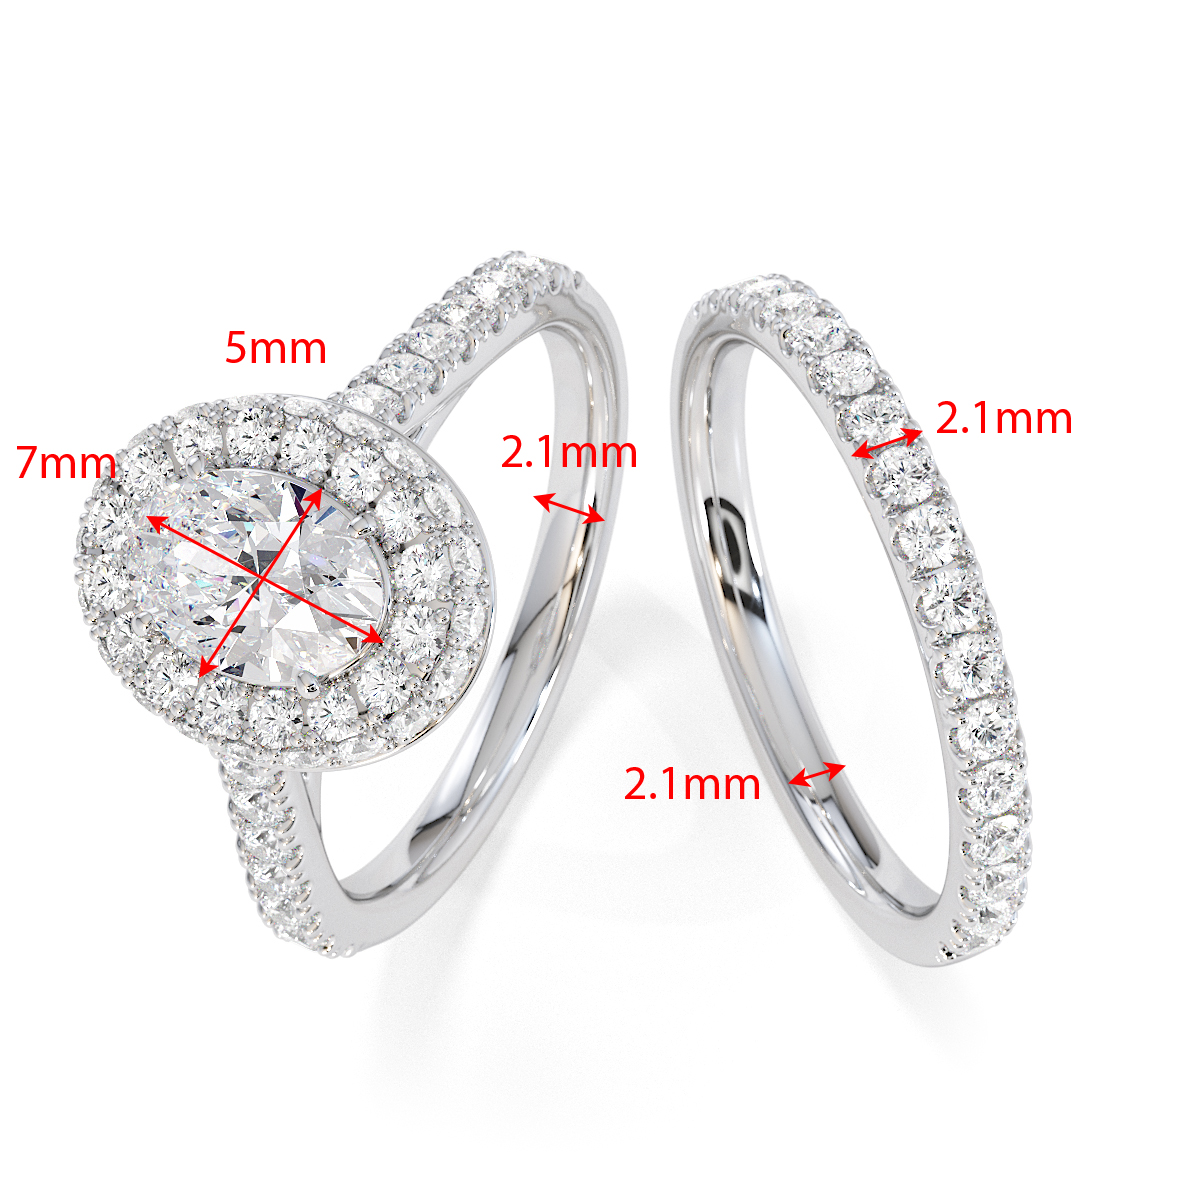 Gold / Platinum Tanzanite and Diamond Engagement Ring RZ3421